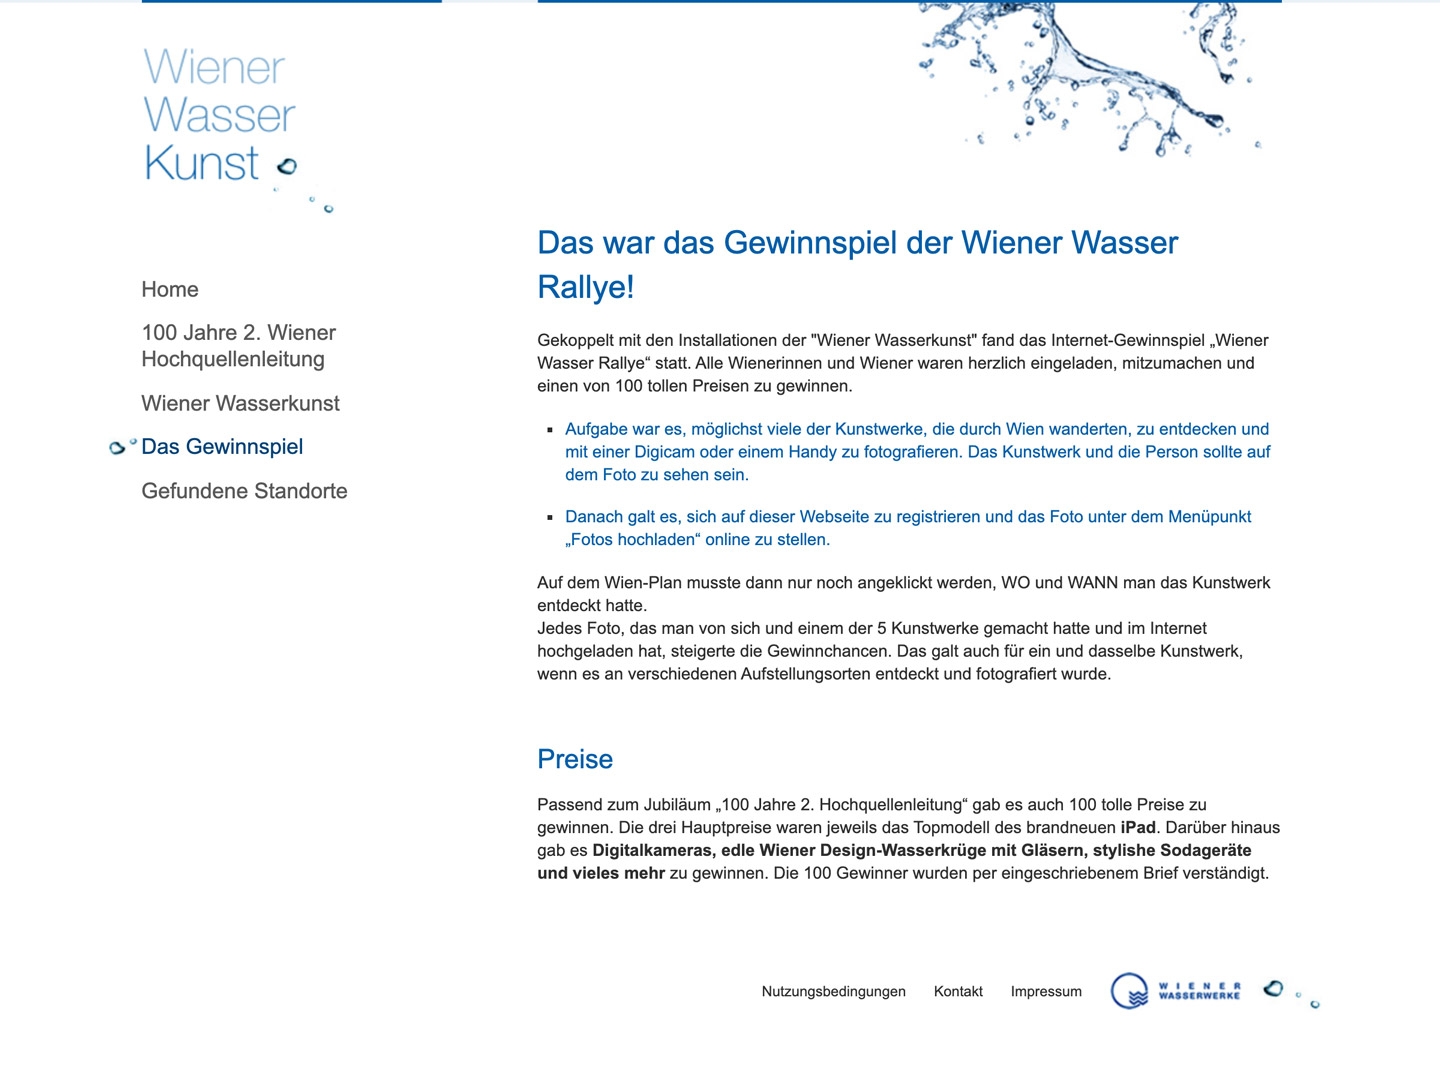 Wiener Wasserkunst | wienerwasserkunst.at | 2010 (Screen Only 05) © echonet communication & Auftraggeber / Fotografen